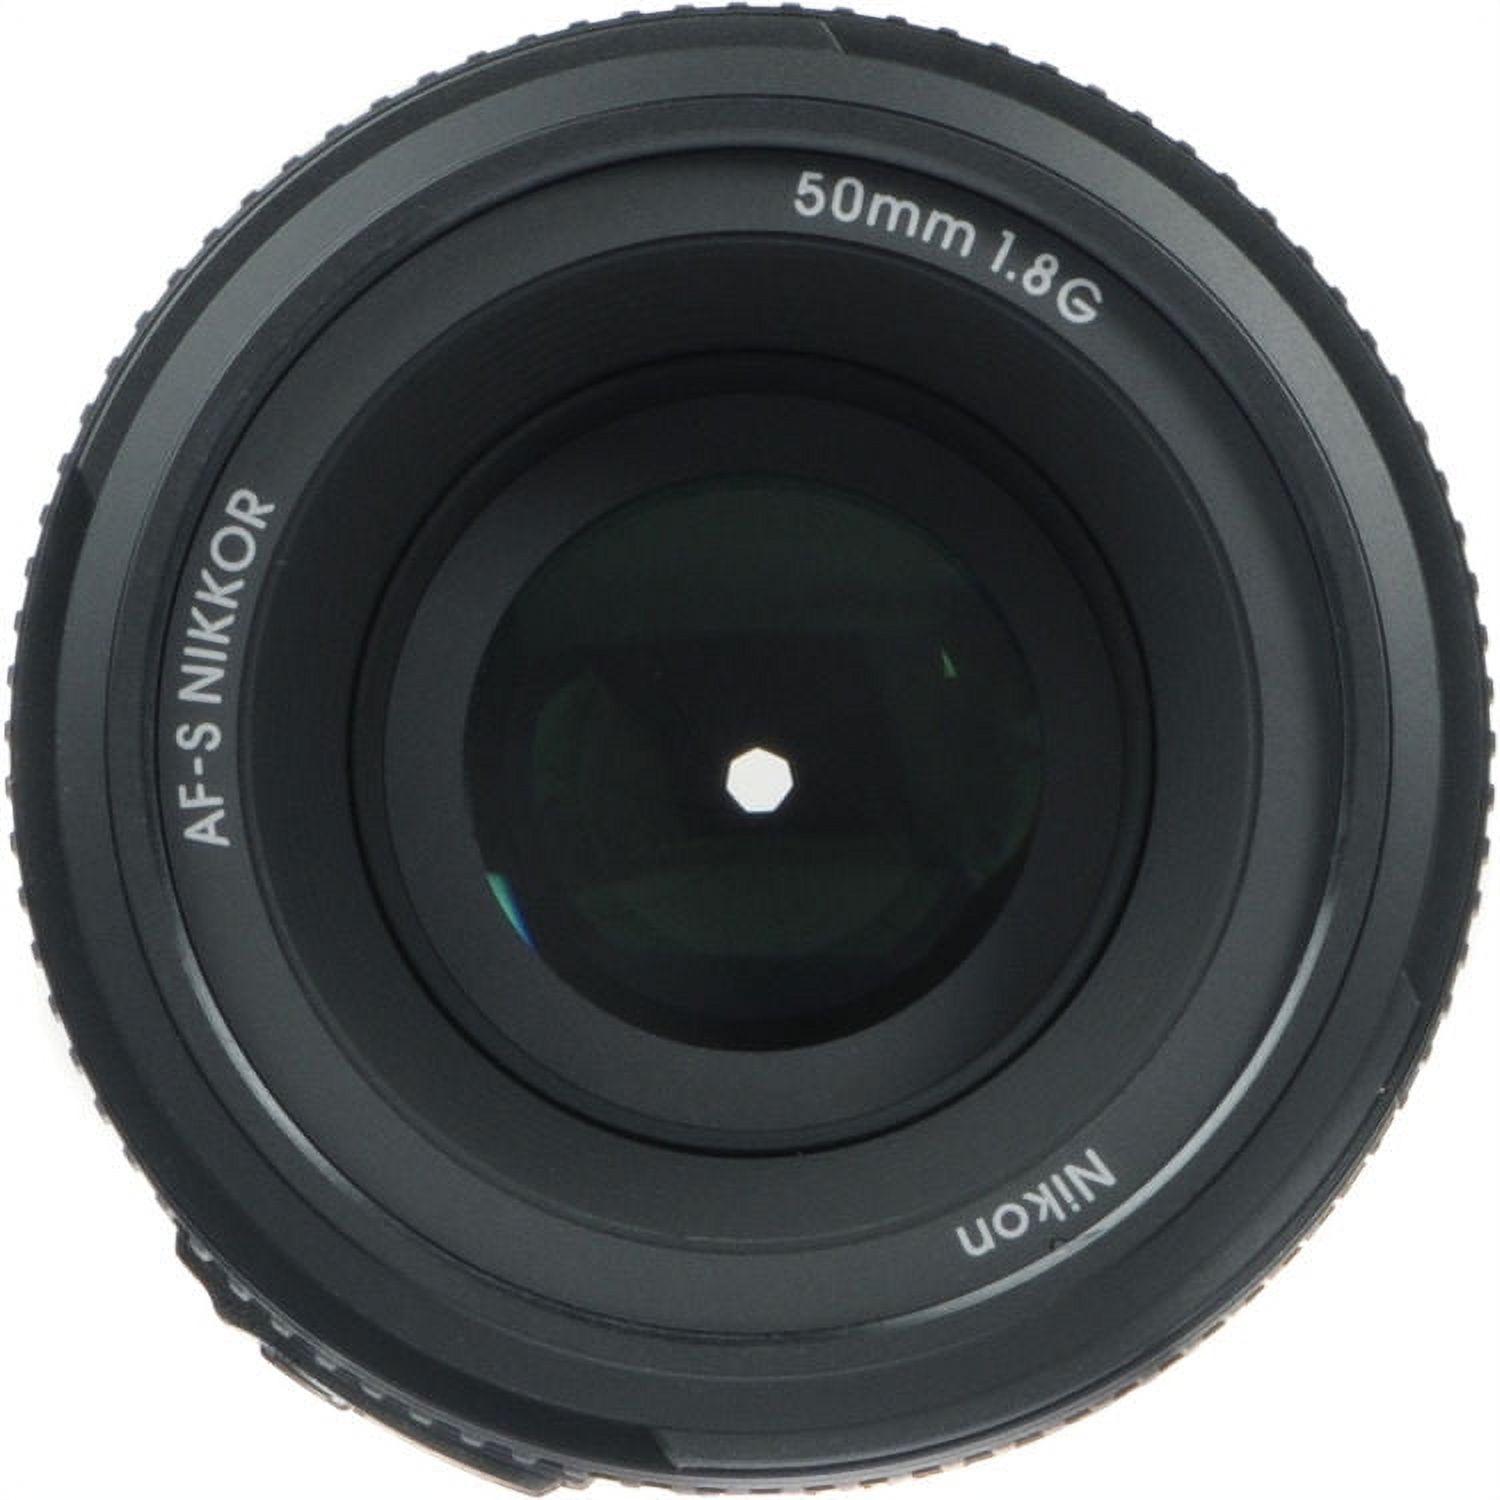 Nikon AF-S FX NIKKOR 50mm f/1.8G Lens with Auto Focus for Nikon DSLR Cameras - image 3 of 4